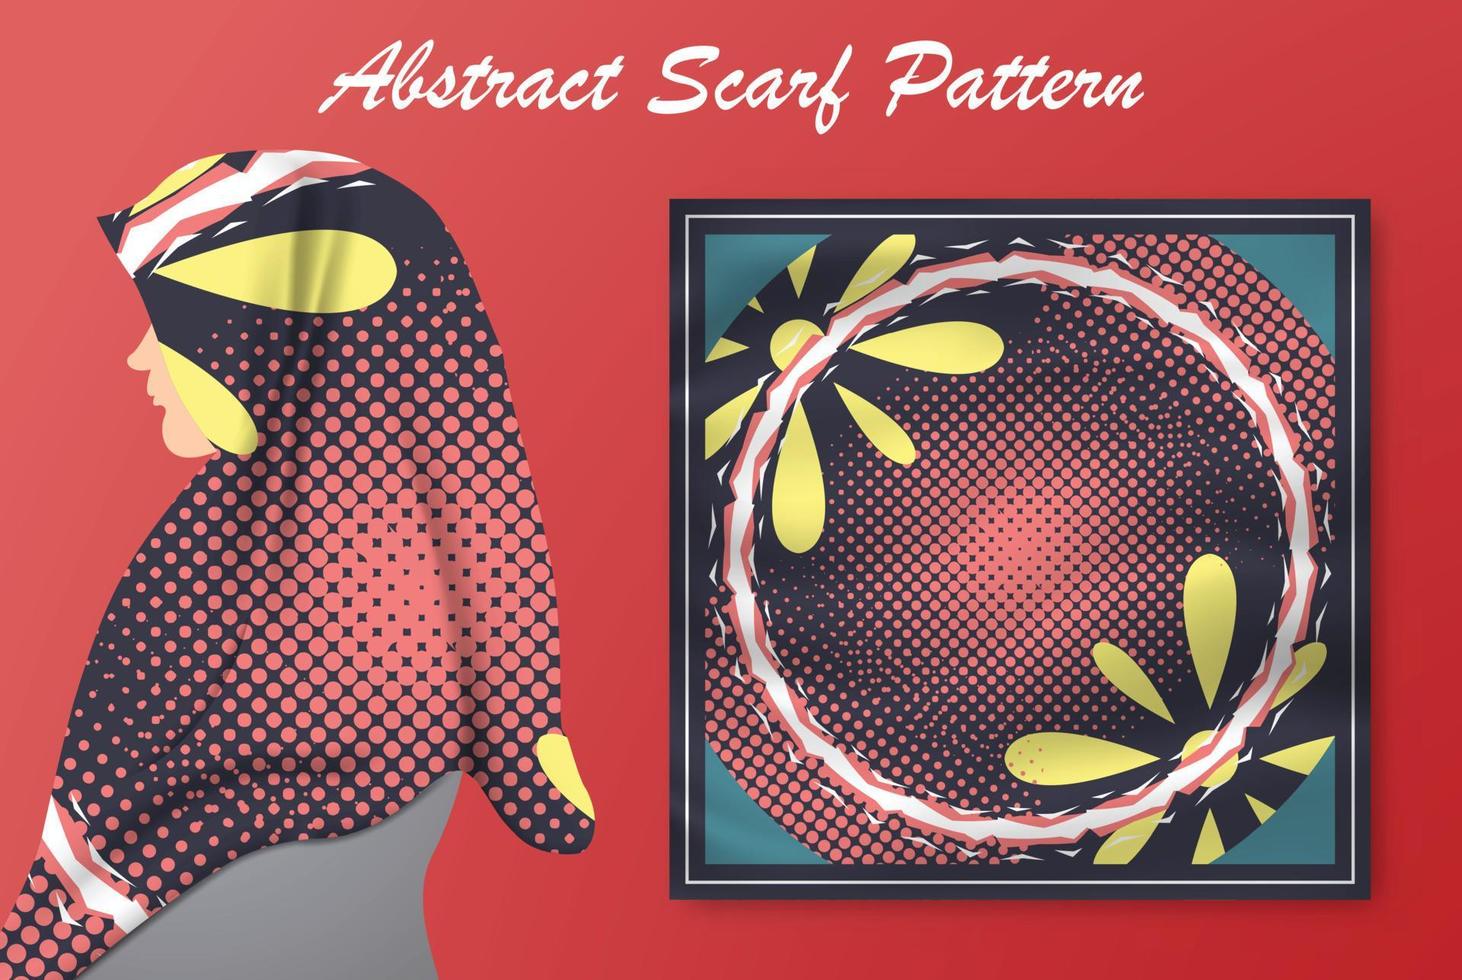 abstrakt scarf mönster design för hijab mode. hijabscarf med stänkborstebläck och löv för tryckproduktion vektor